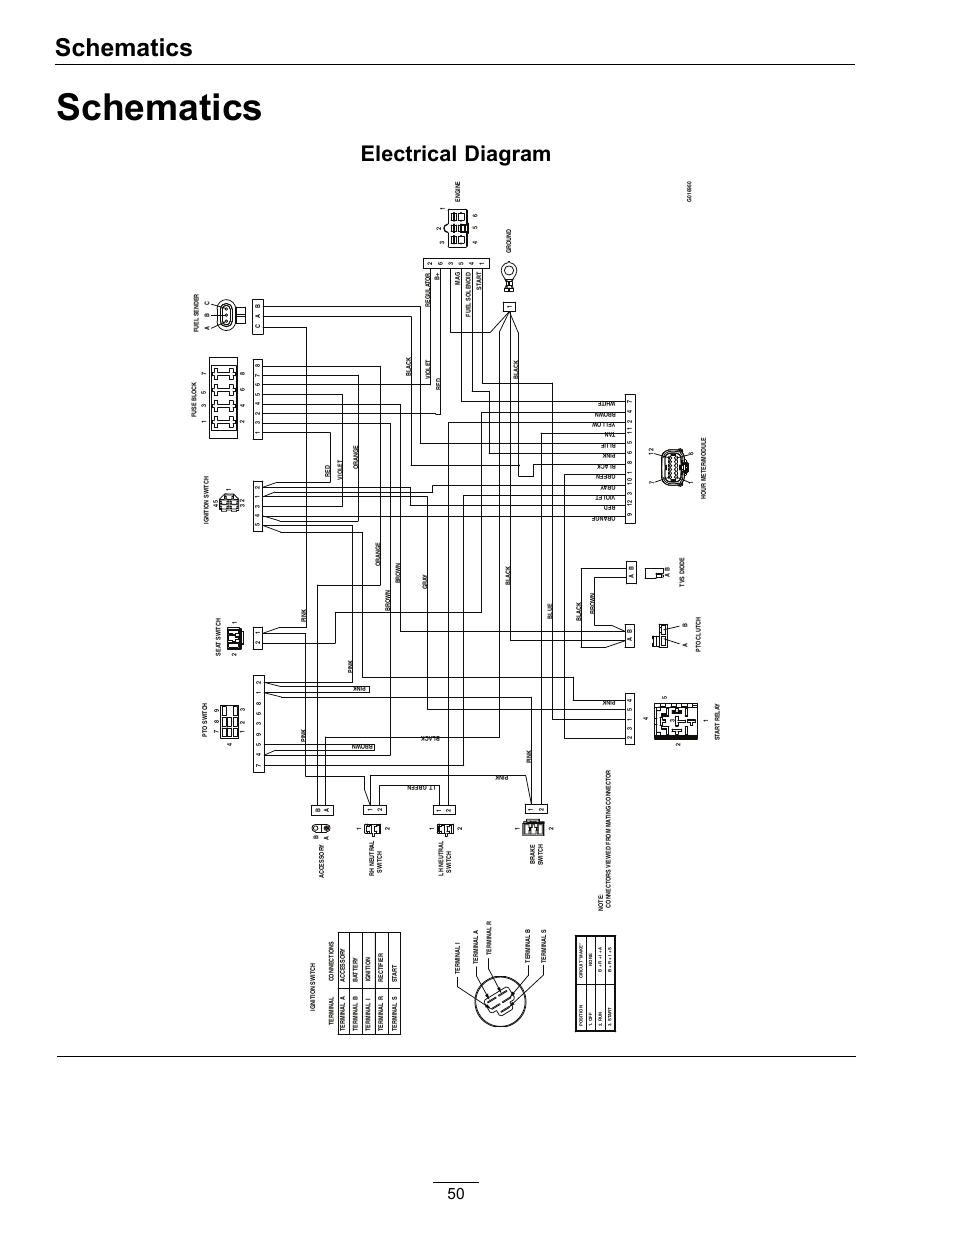 mn141489 wiring diagram